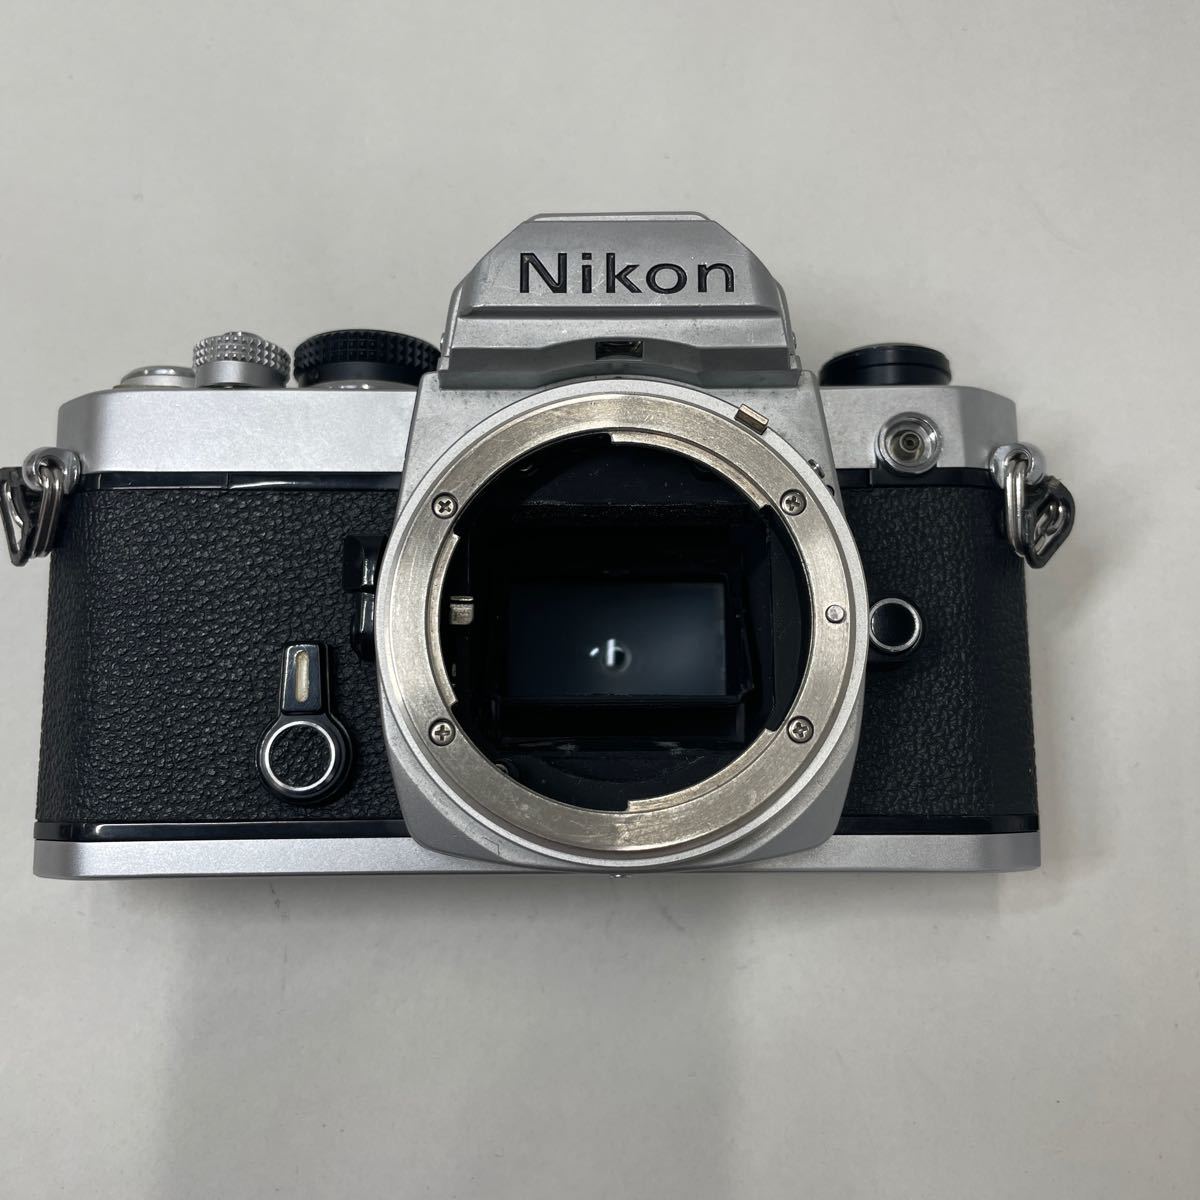 ジャンク/返品不可 カメラ Nikon FM i50790 j1_画像2